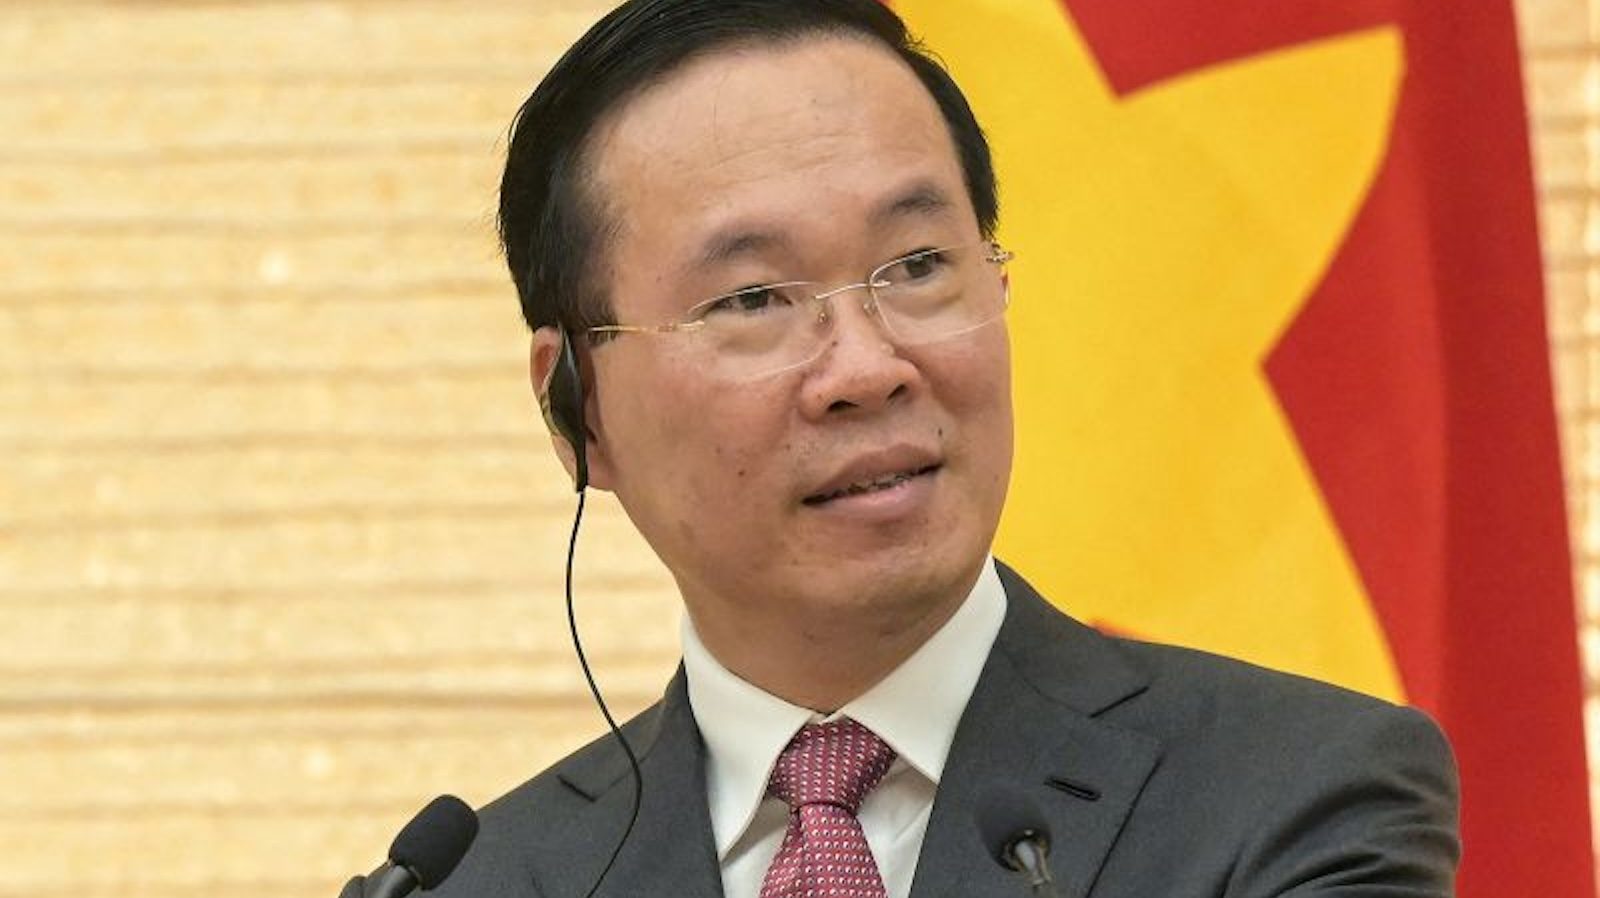 Prezydent Wietnamu rezygnuje, co rodzi pytania o stabilność kraju